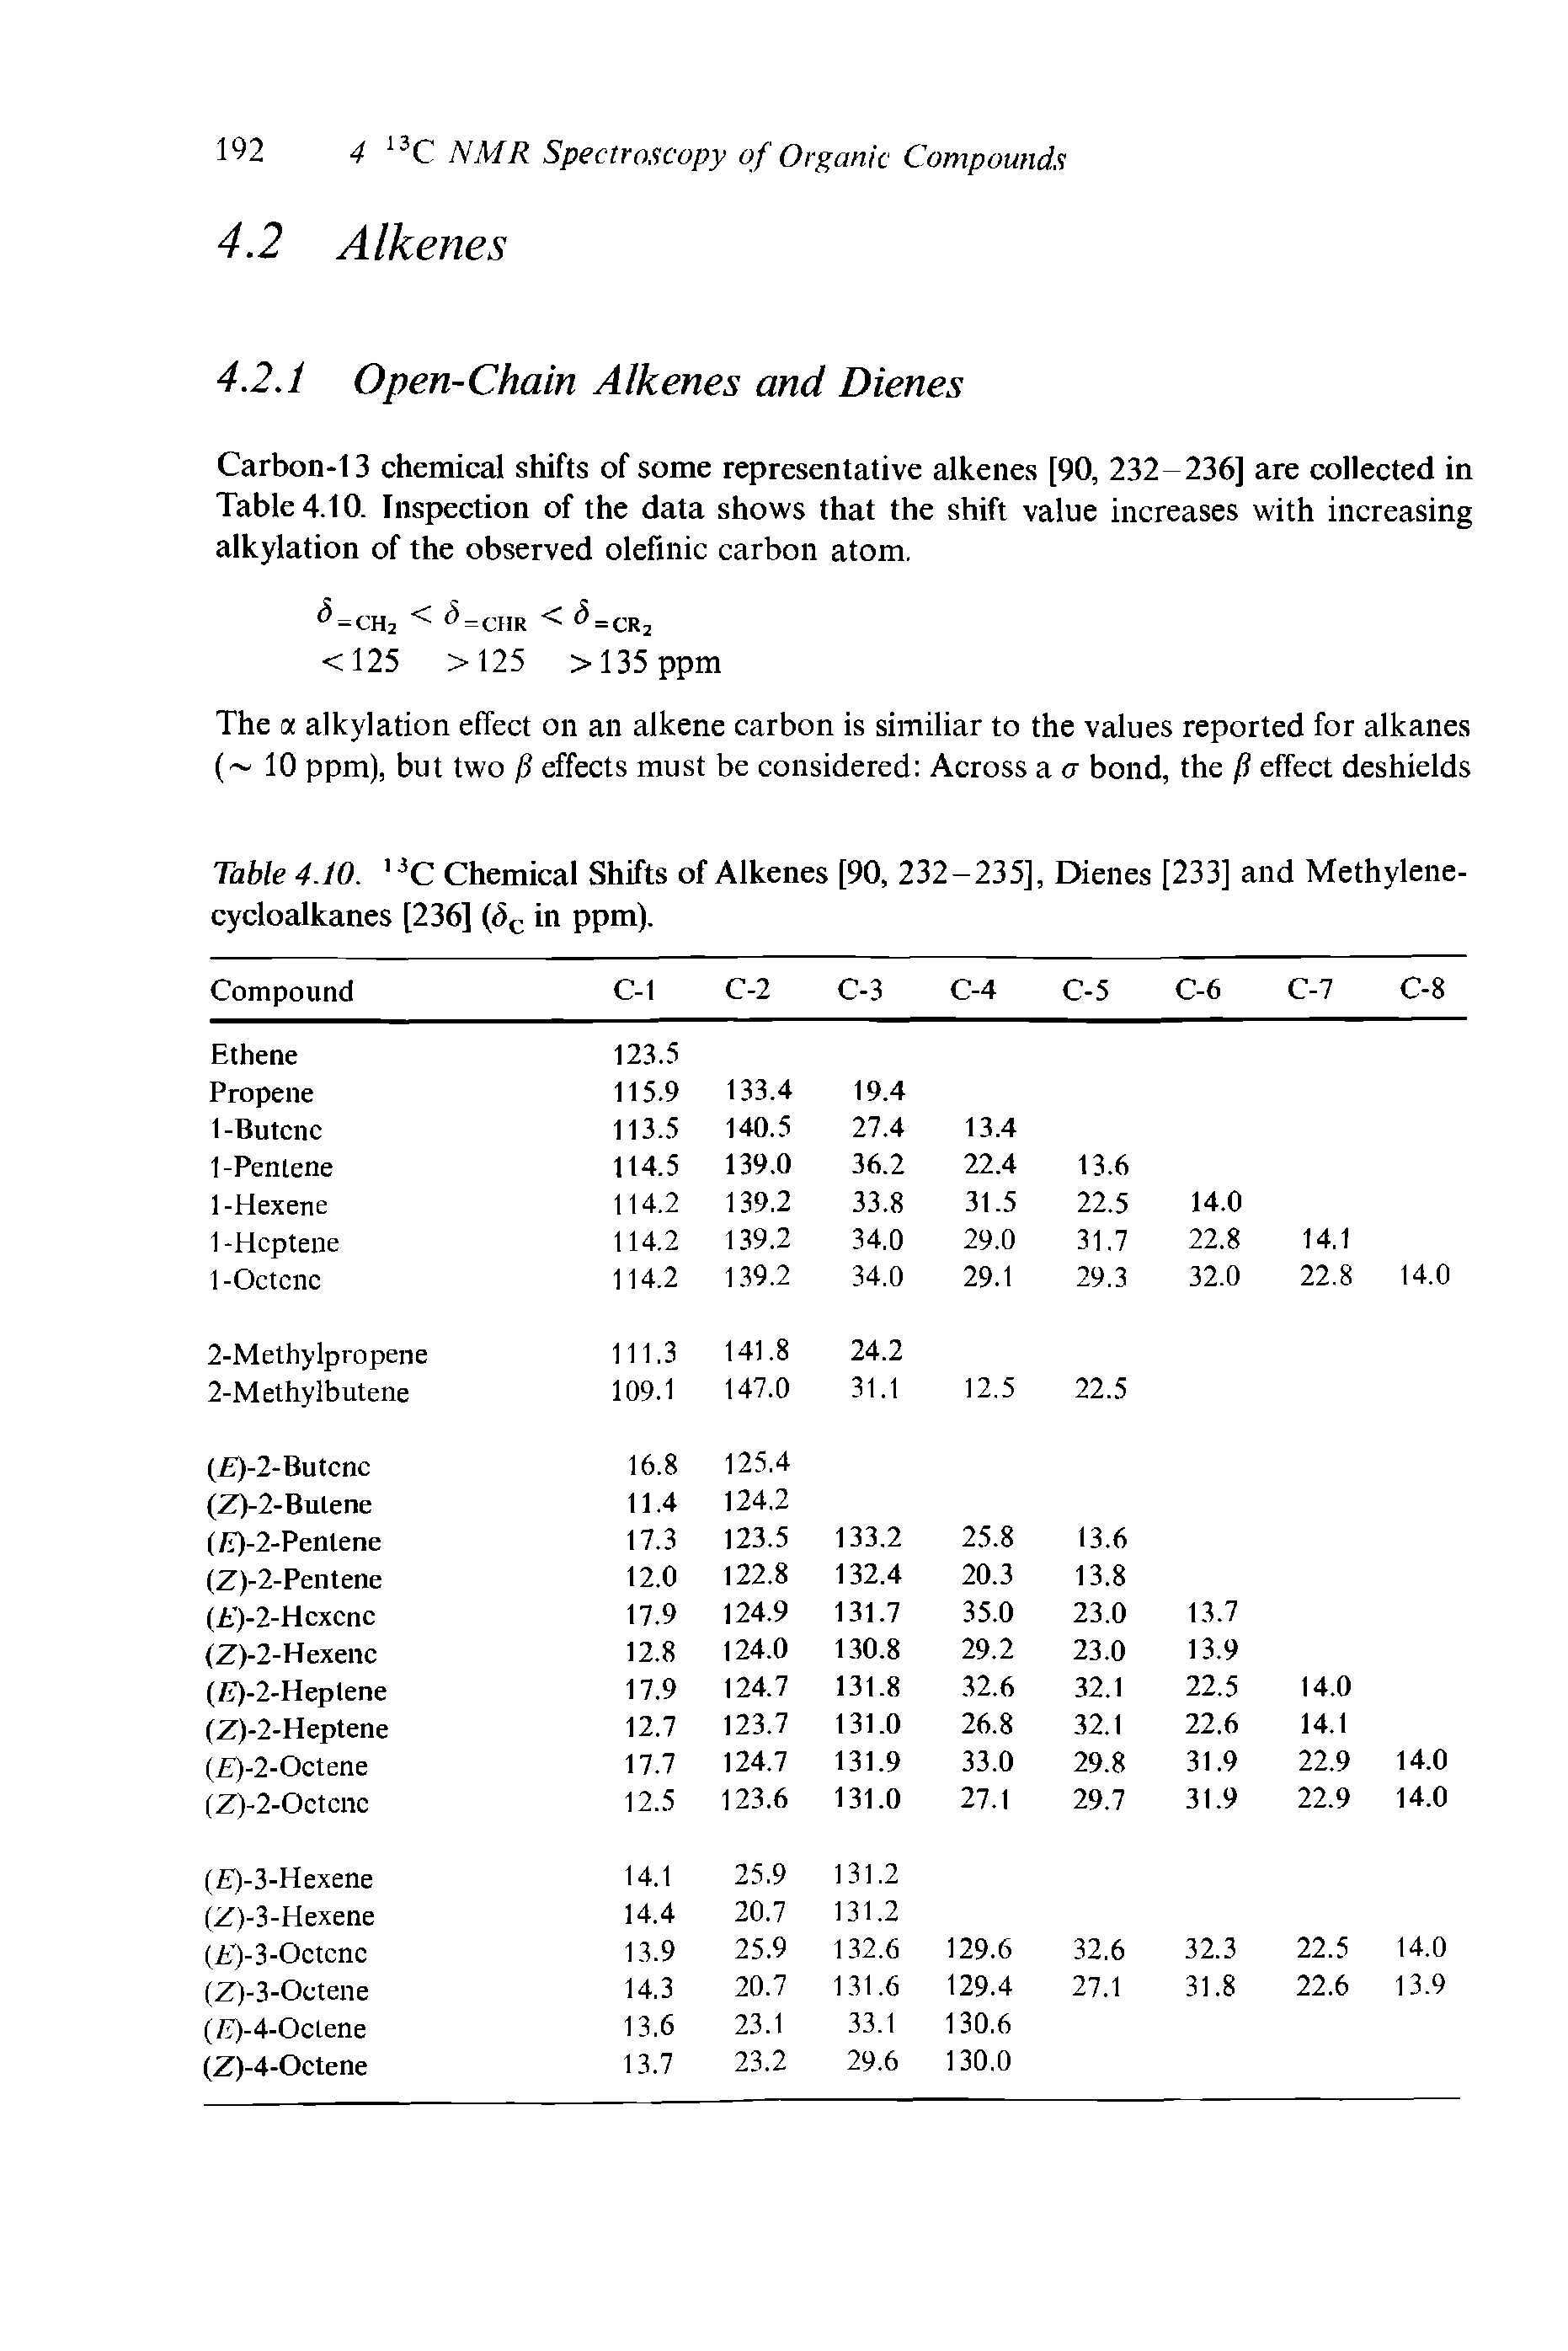 Table 4.10. 13C Chemical Shifts of Alkenes [90, 232-235], Dienes [233] and Methylene-cycloalkanes [236] (Sc in ppm).